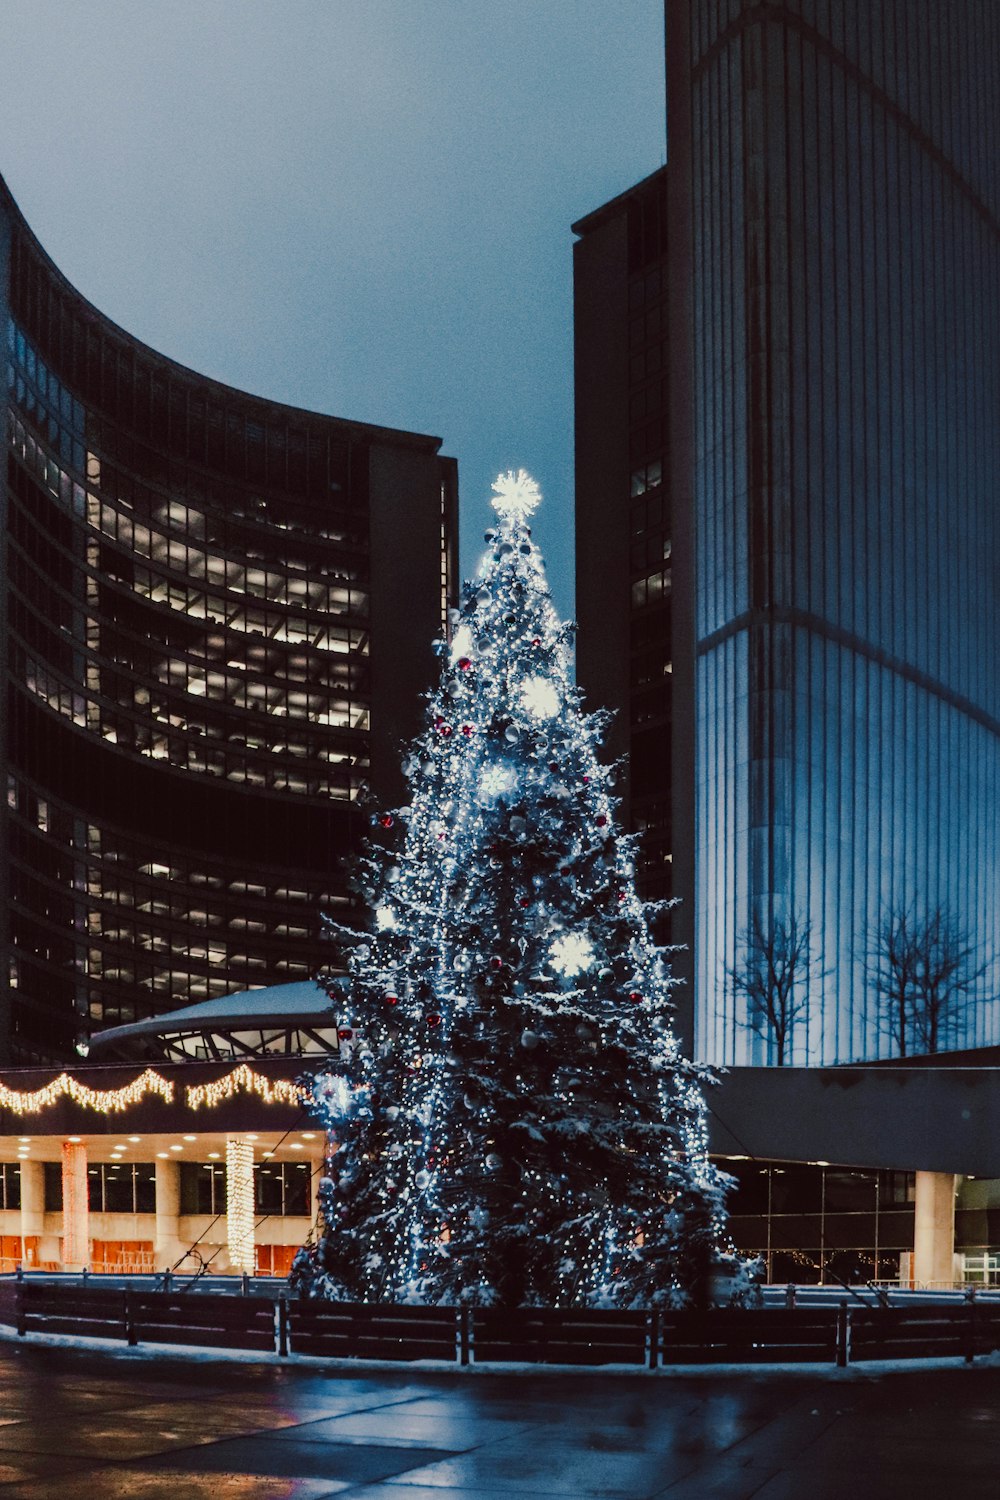 Weißer Weihnachtsbaum mit Lichterketten in der Nähe von Hochhäusern während der Nachtzeit